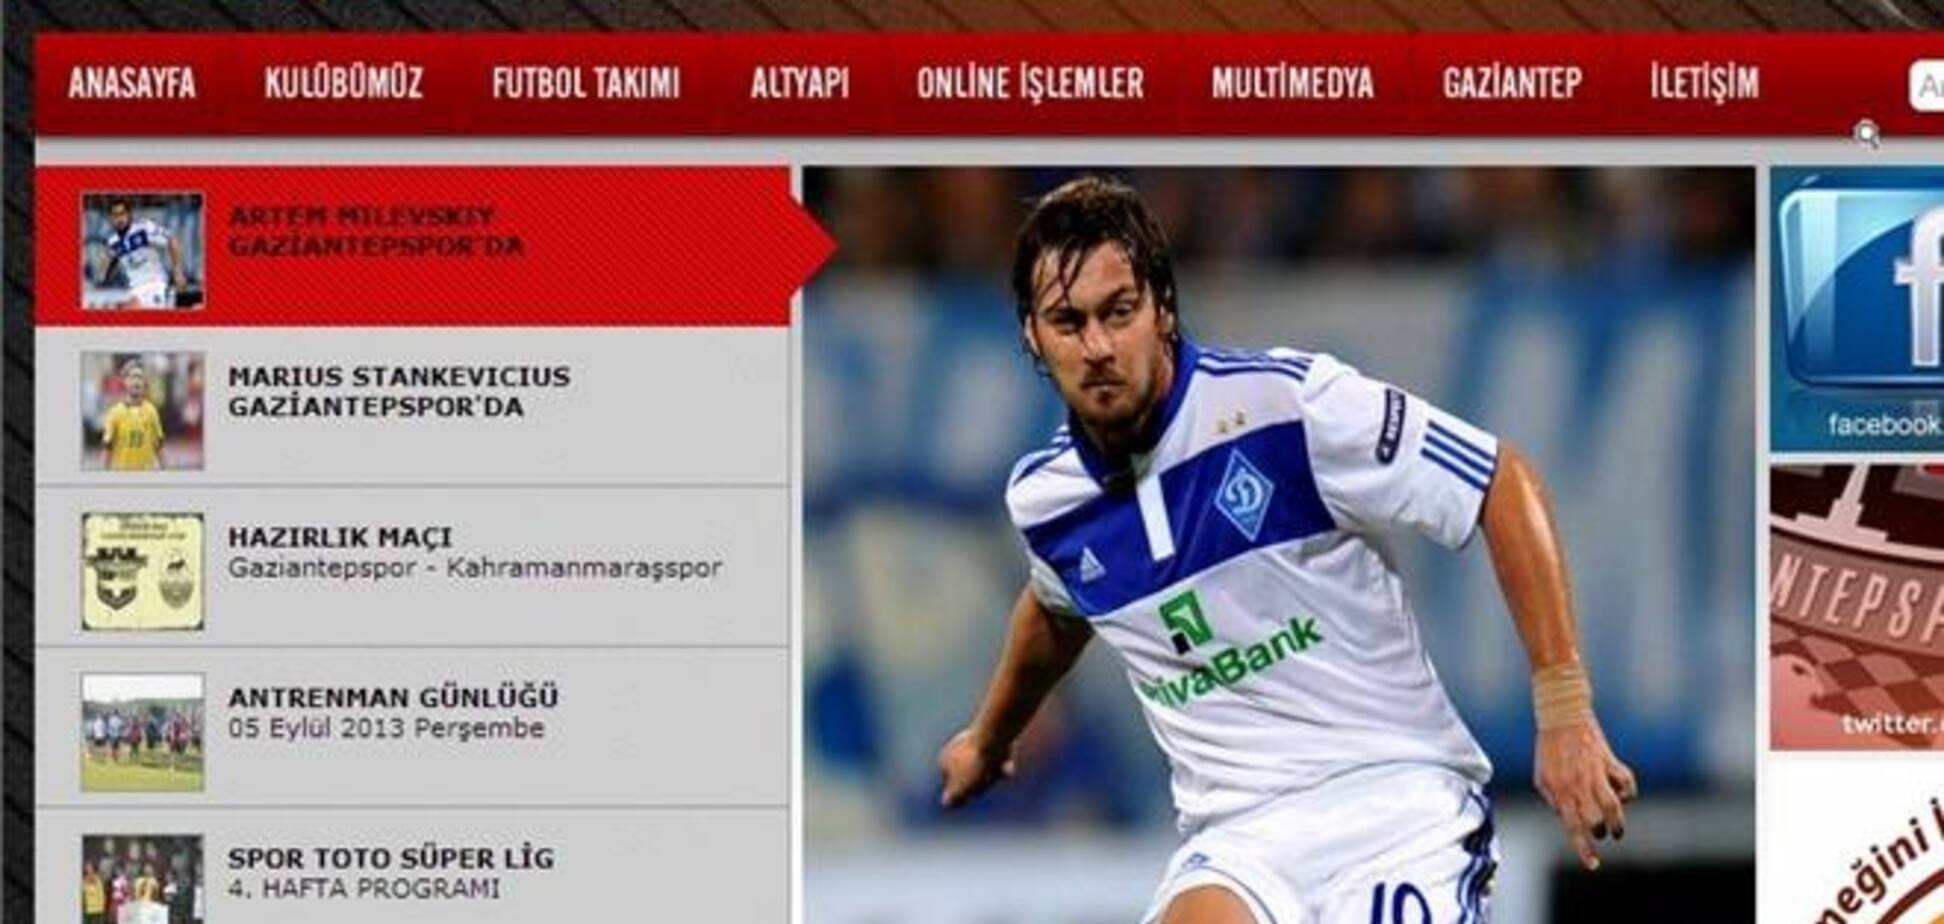 Официально: Милевский подписал контракт с турецким клубом